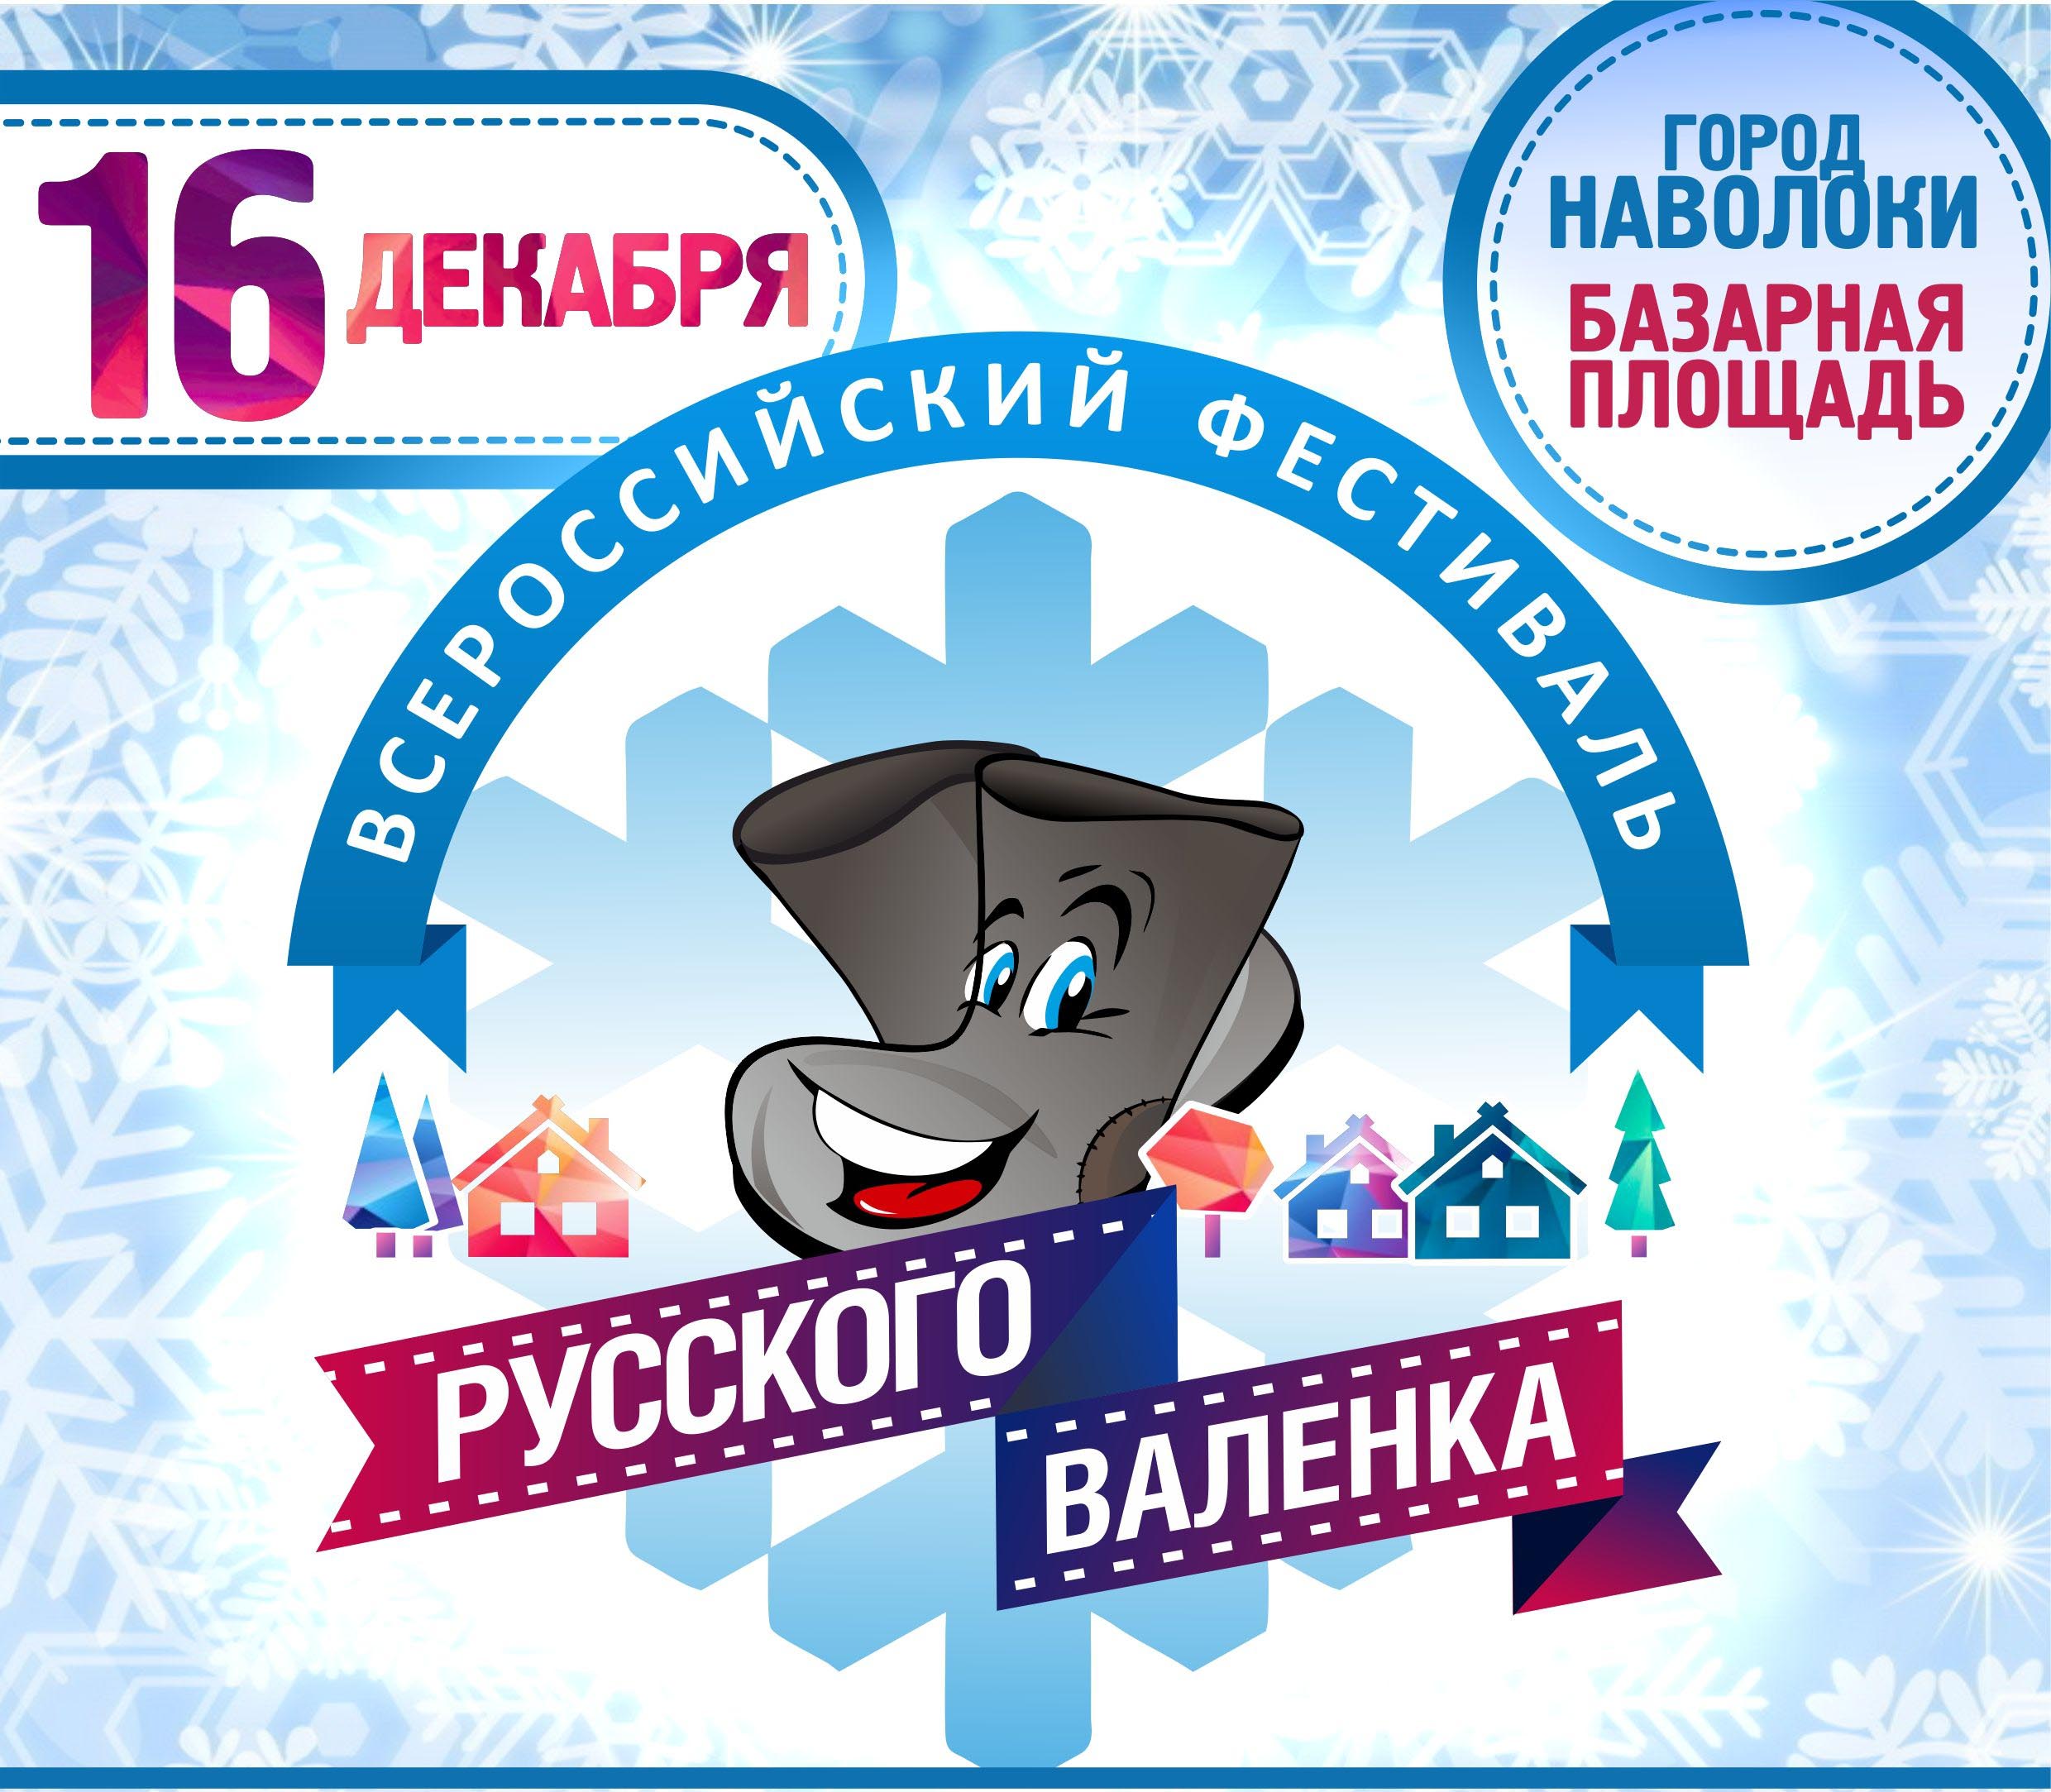 В Наволоках завтра пройдет второй всероссийский фестиваль русского валенка